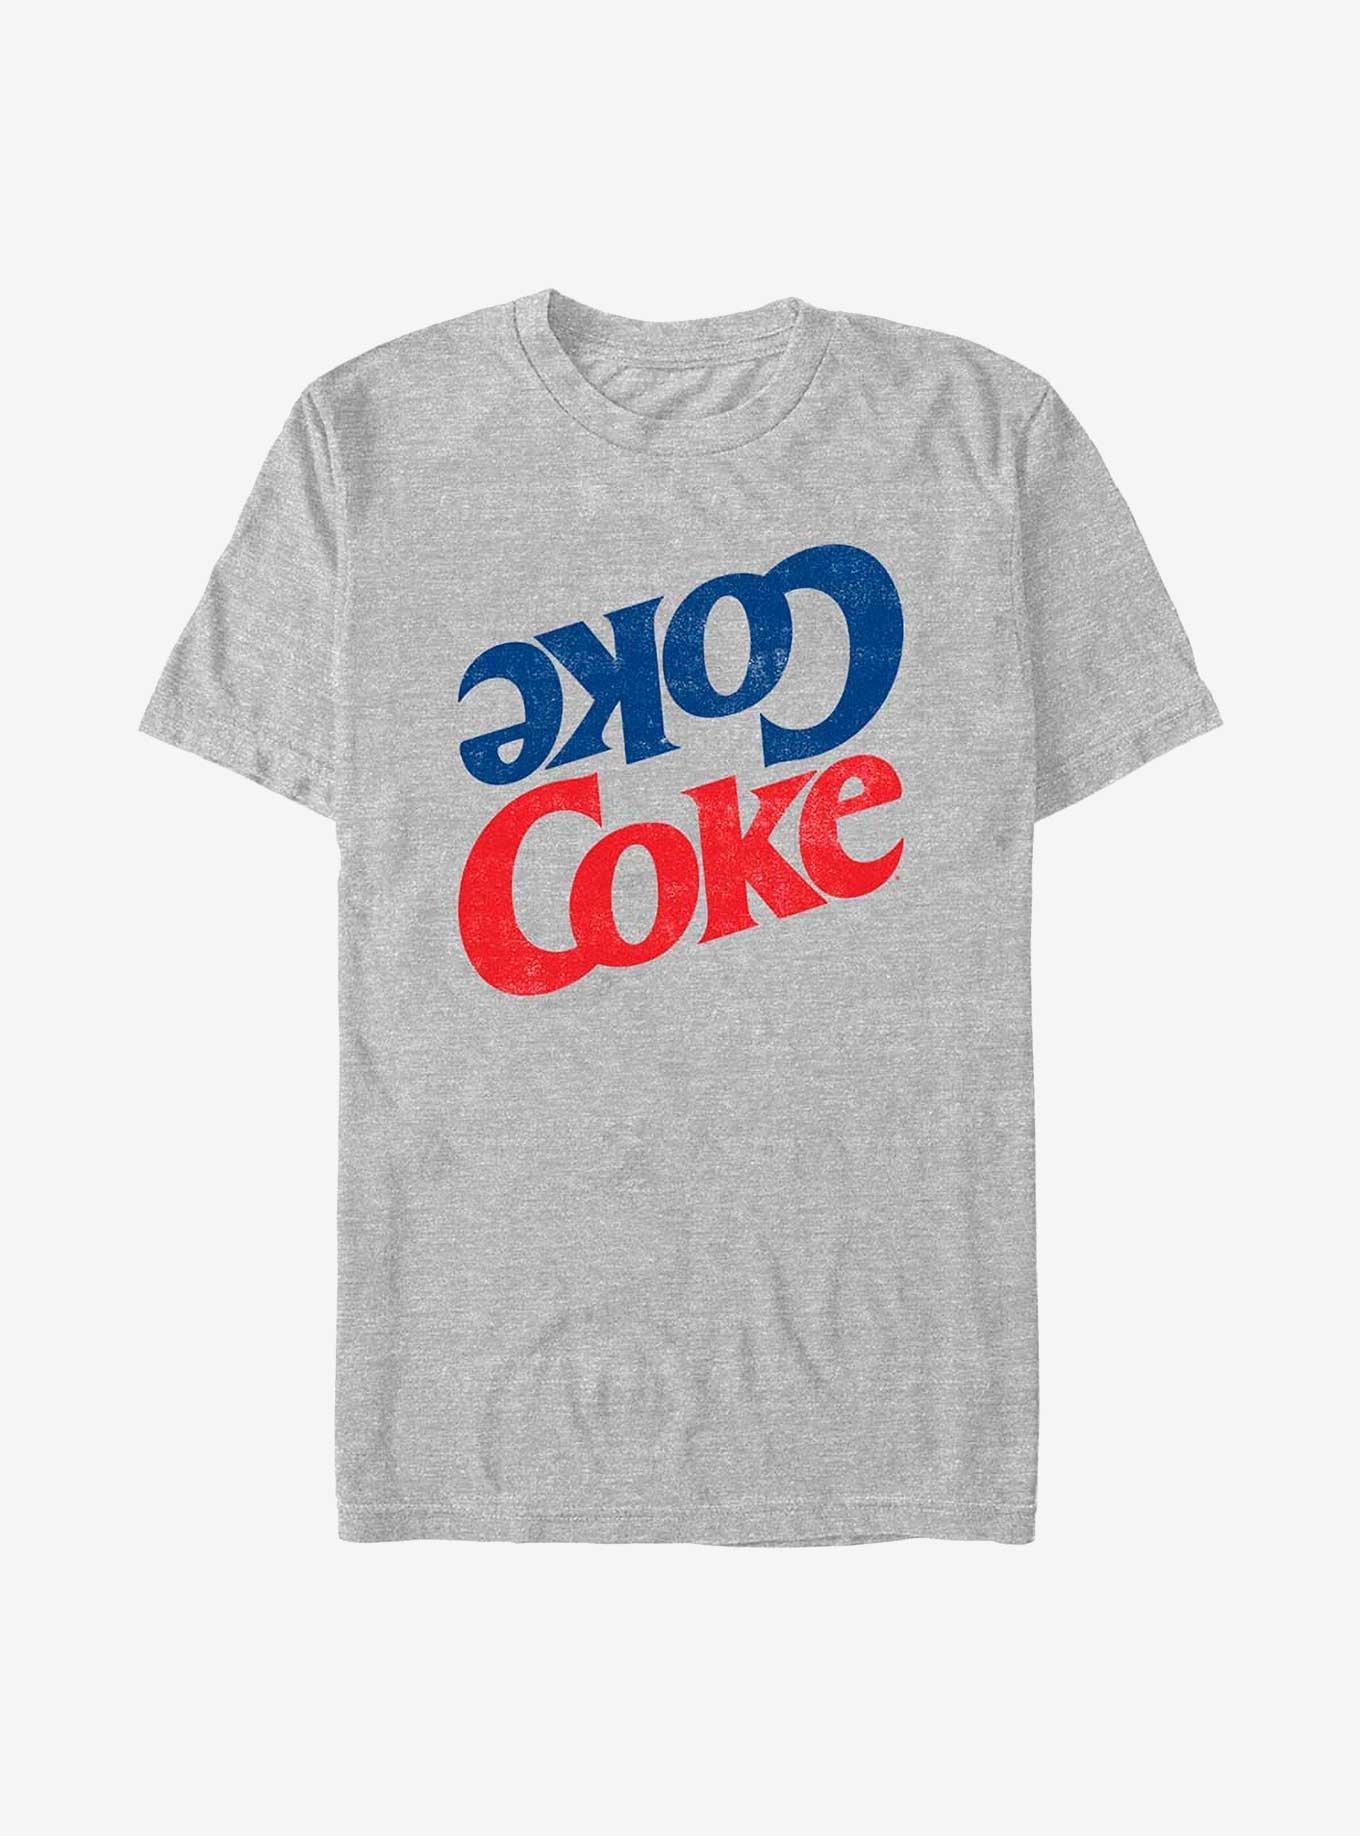 Coca-Cola Coke Stack T-Shirt, ATH HTR, hi-res